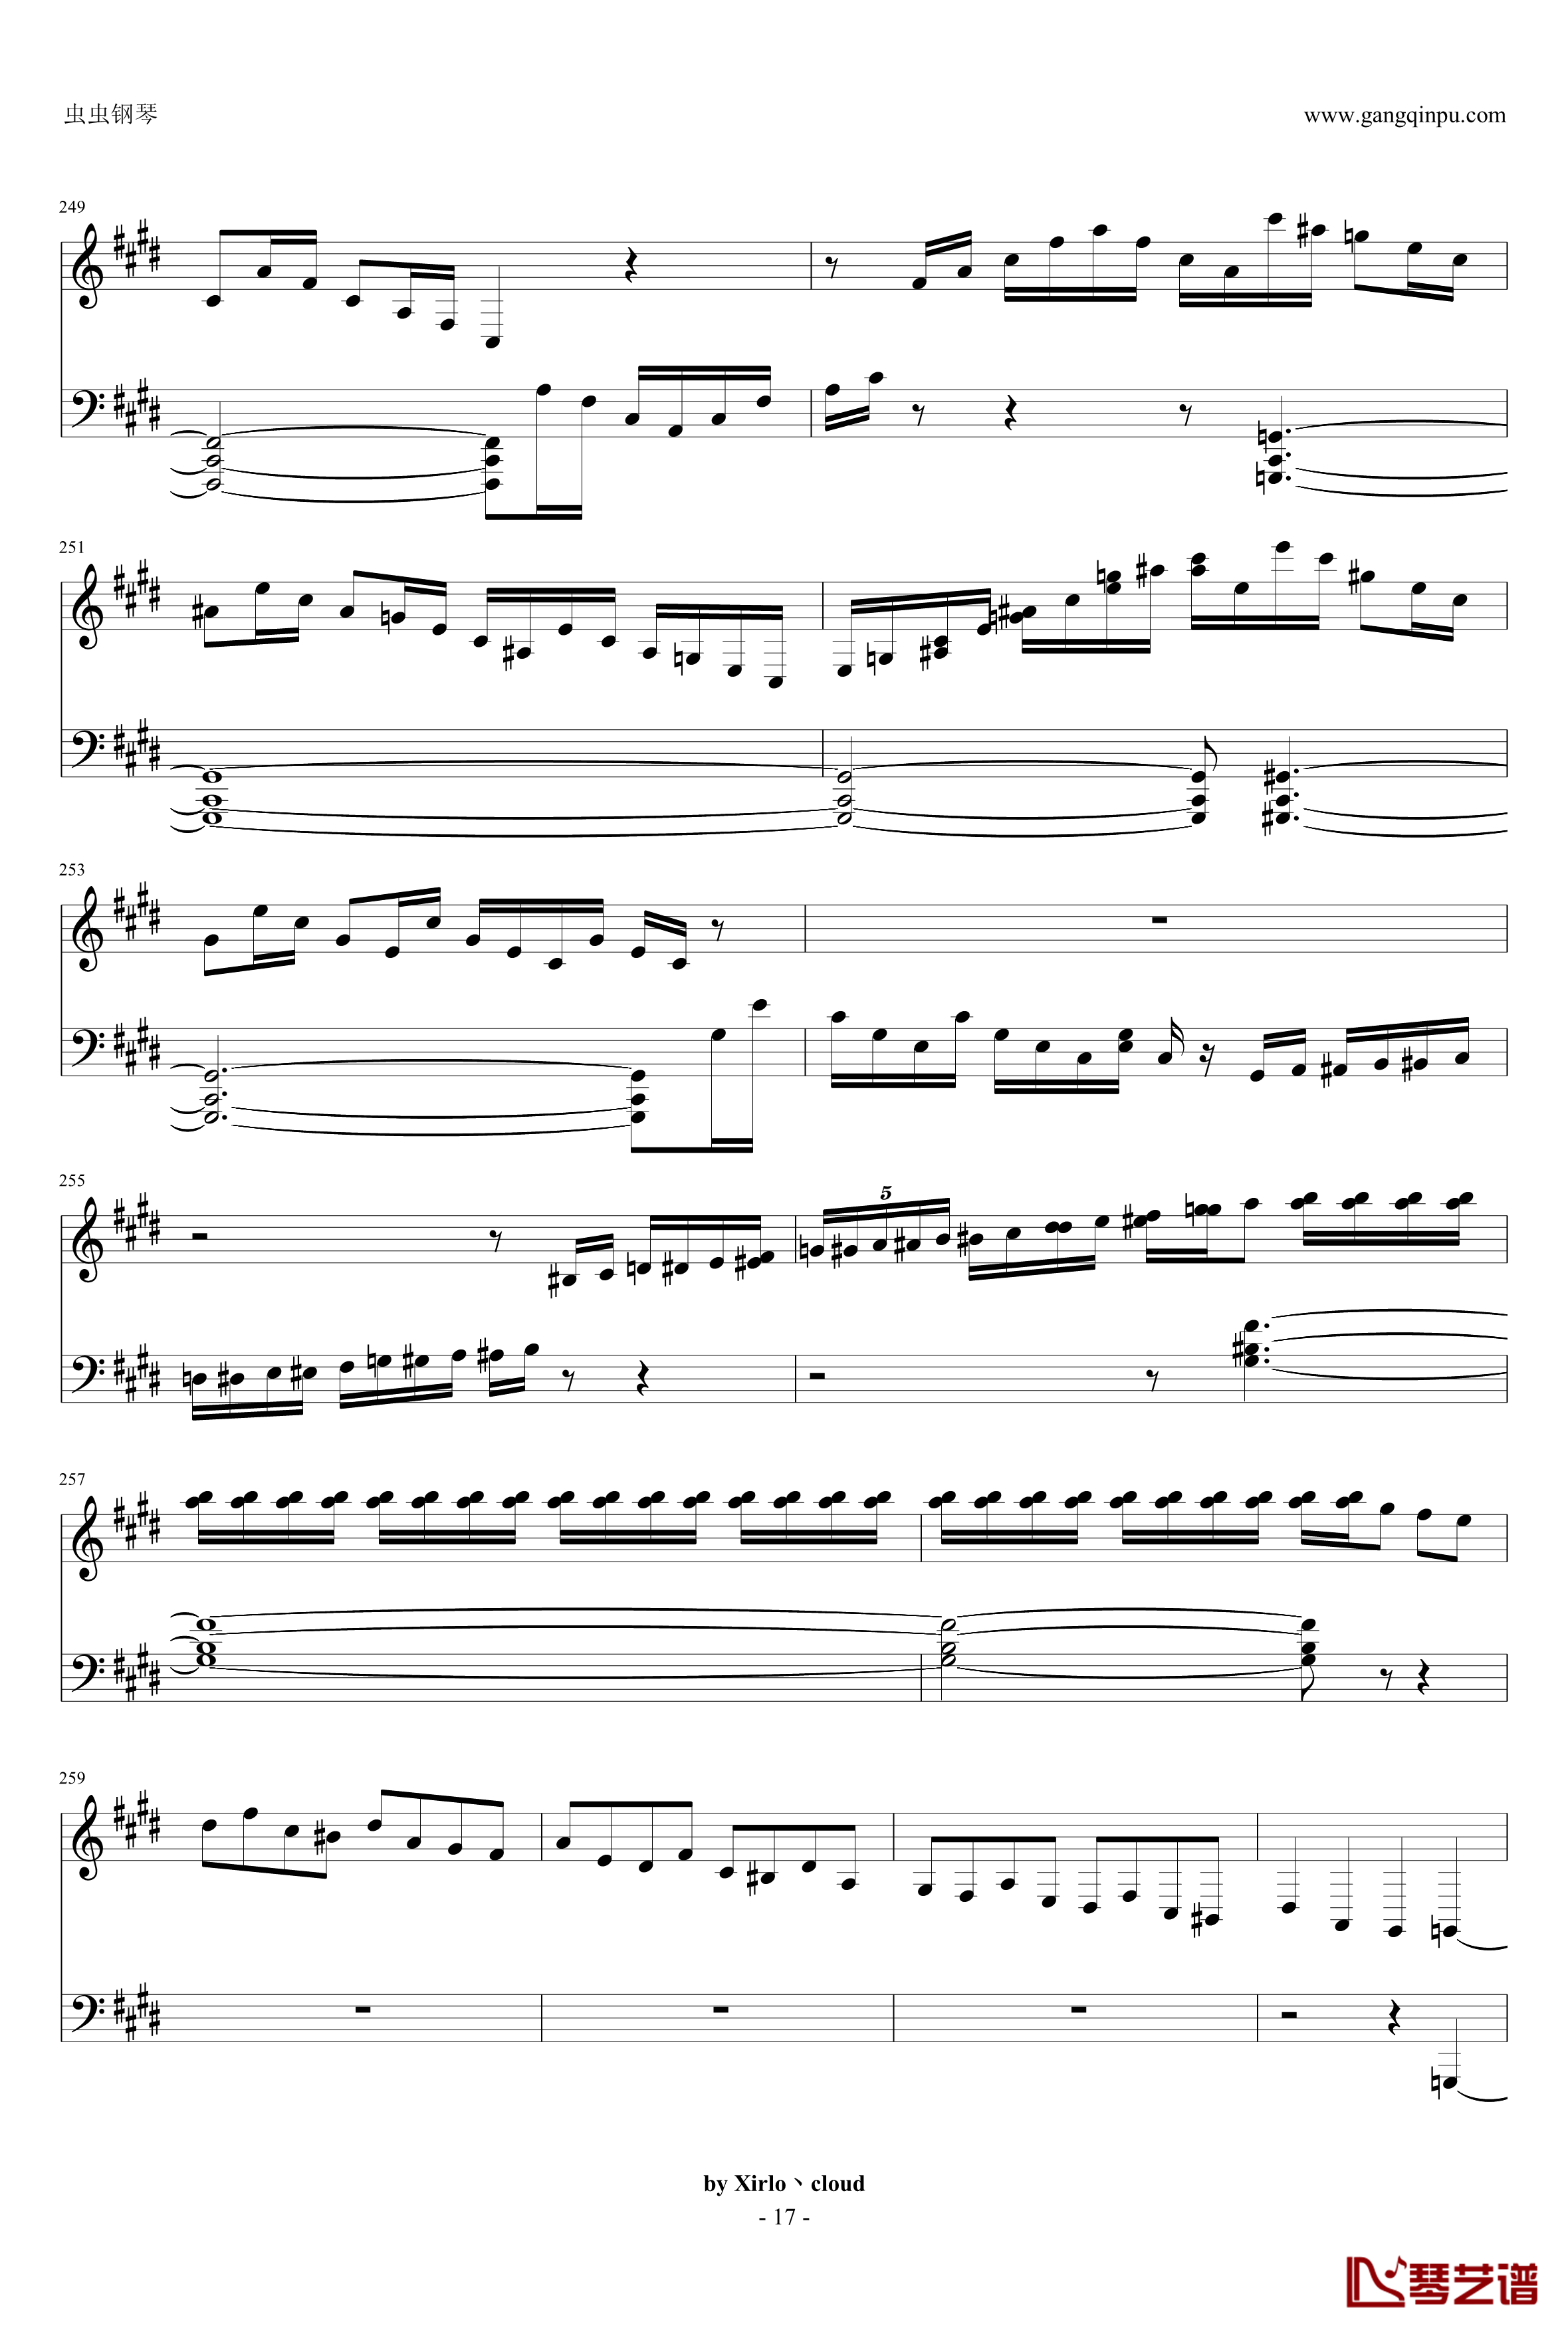 月光奏鸣曲钢琴谱-改编版-贝多芬-beethoven17